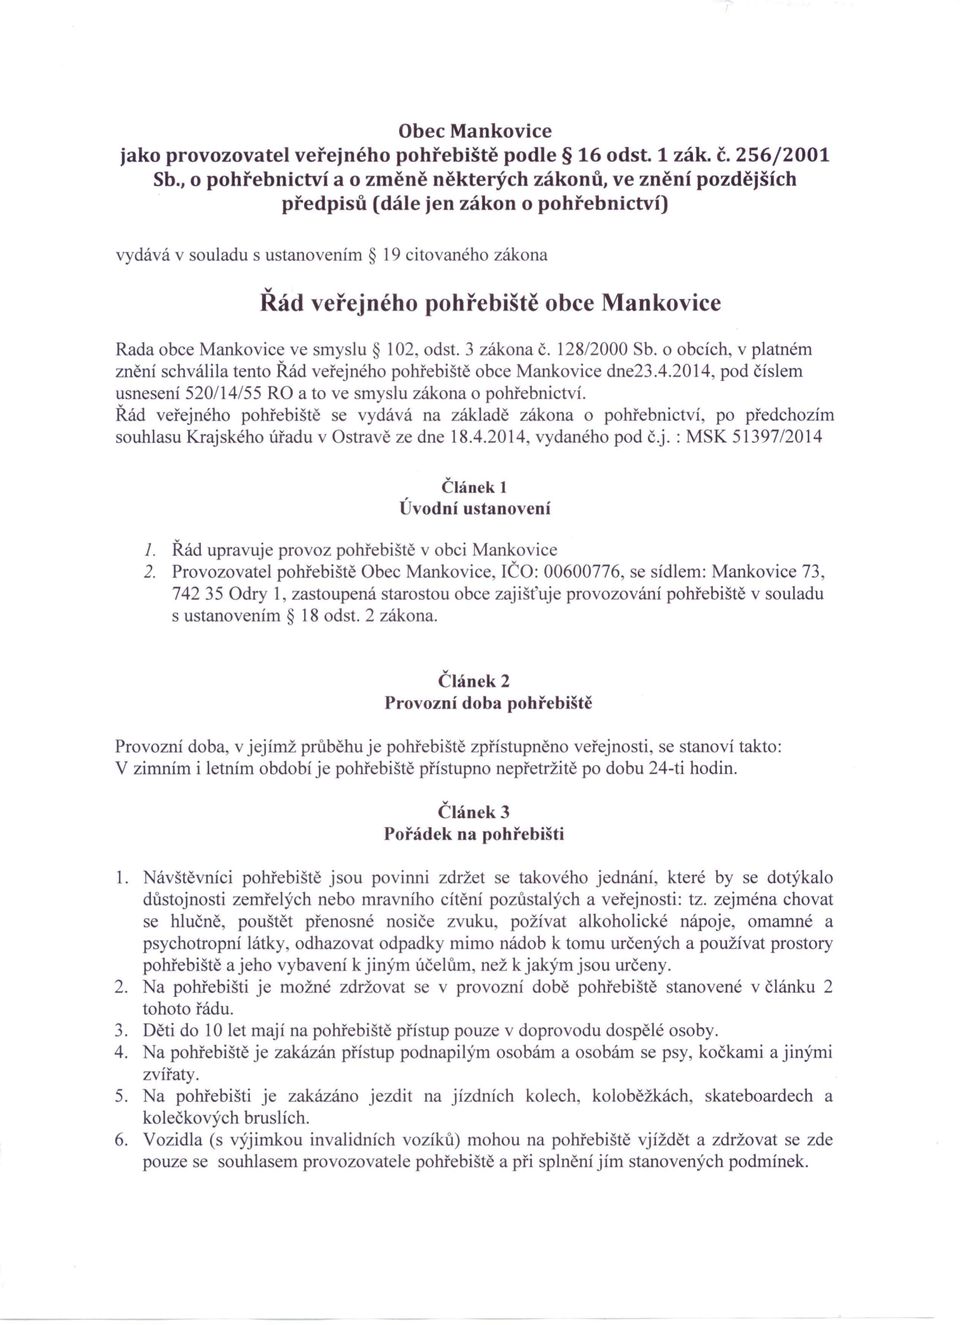 Rada obce Mankovice ve smyslu 102, odst. 3 zákona č. 128/2000 Sb. o obcích, v platném znění schválila tento Řád veřejného pohřebiště obce Mankovice dne23.4.